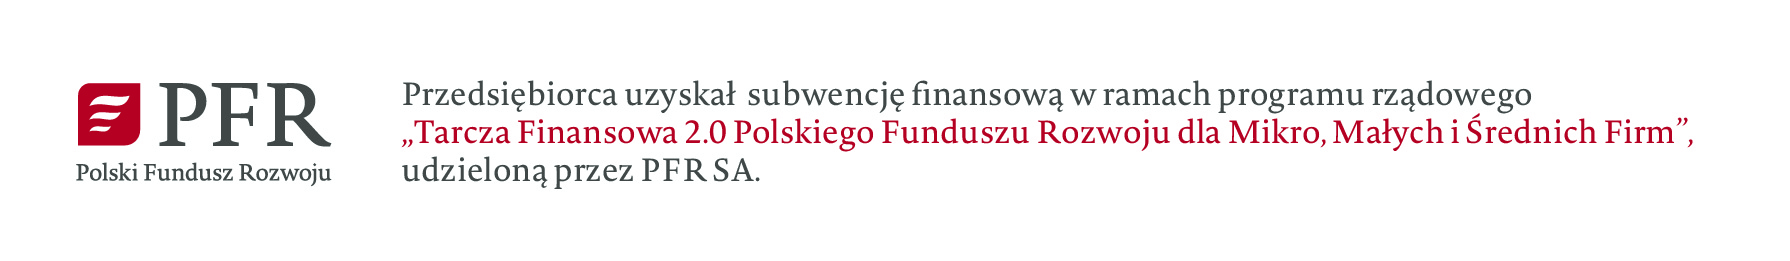 Przedsiębiorca uzyskał subwencję finansową w ramach programu rządowego "Tarcza finansowa 2.0 Polskiego Funduszu Rozwoju dla Mikro, Małych i Średnich Firm", udzieloną przez PFR SA